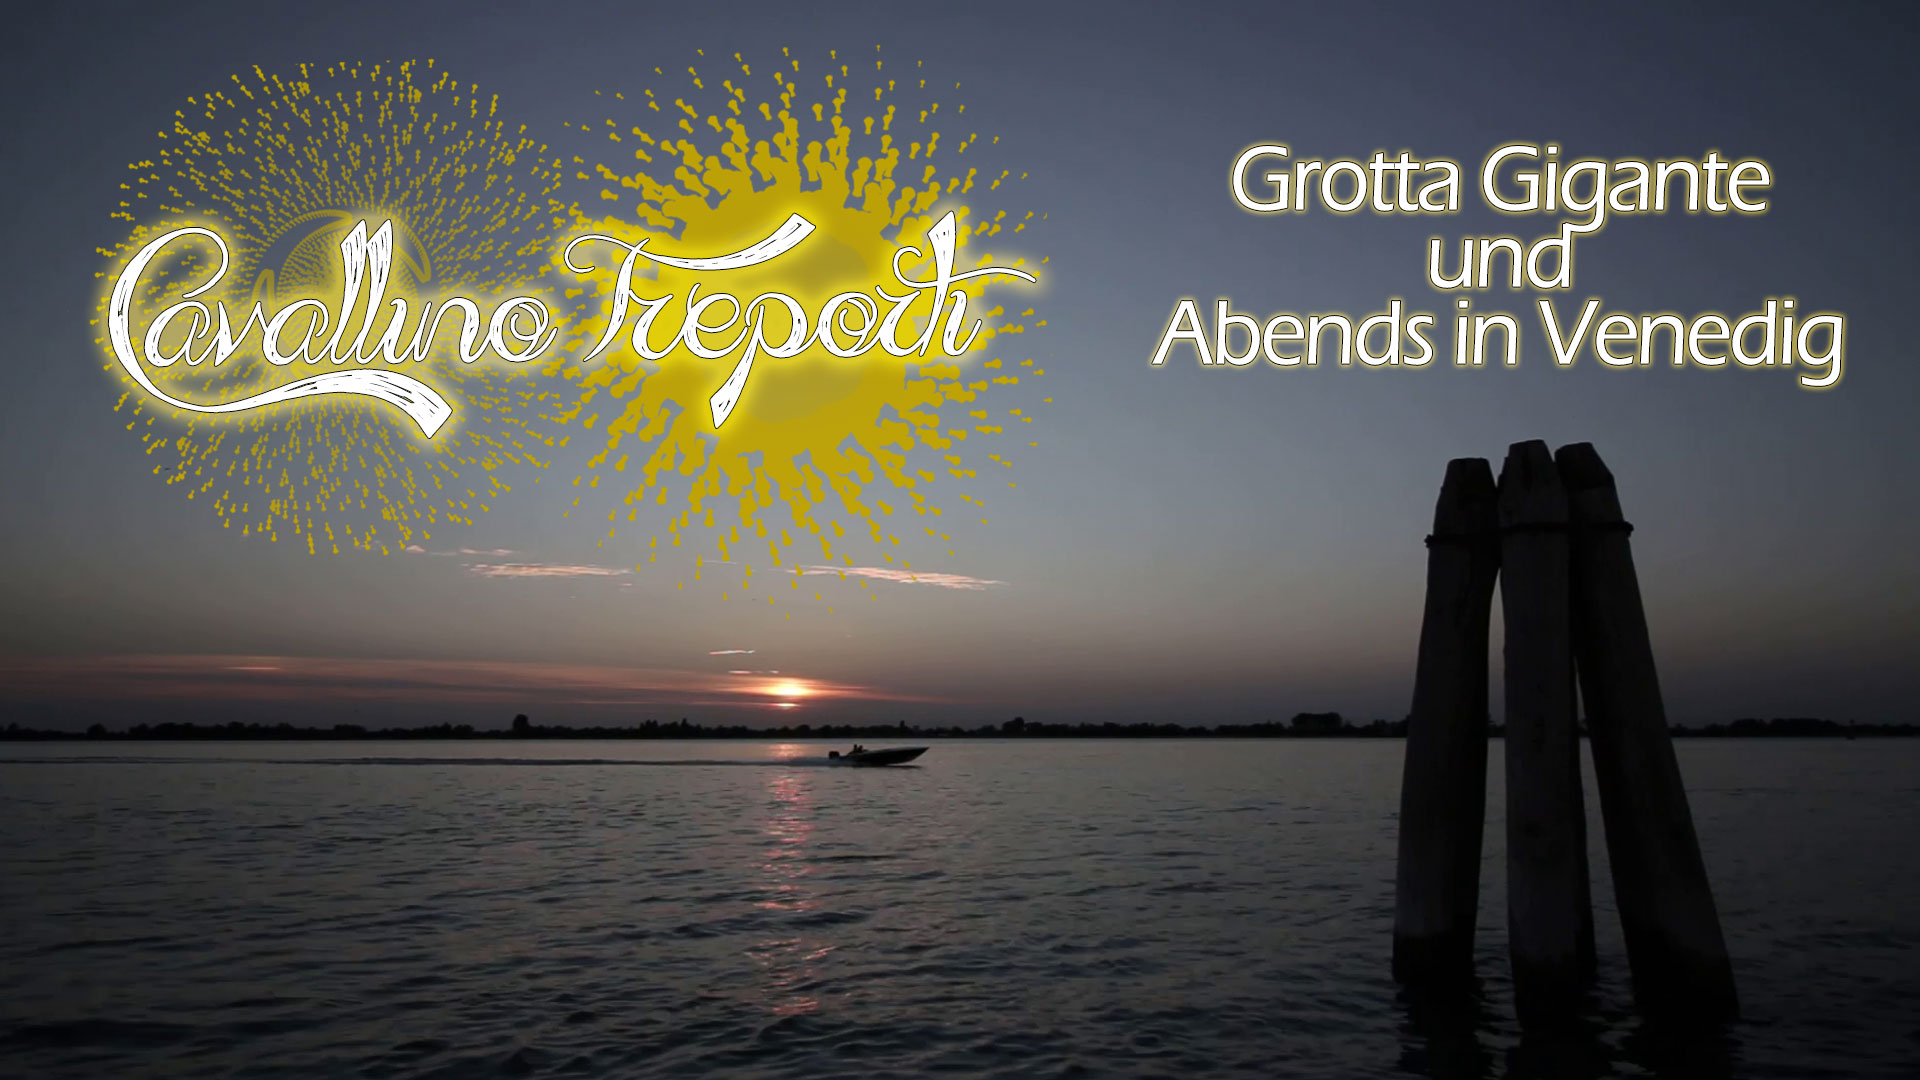 Cavallino Treporti - Grotta Gigante & Venedig